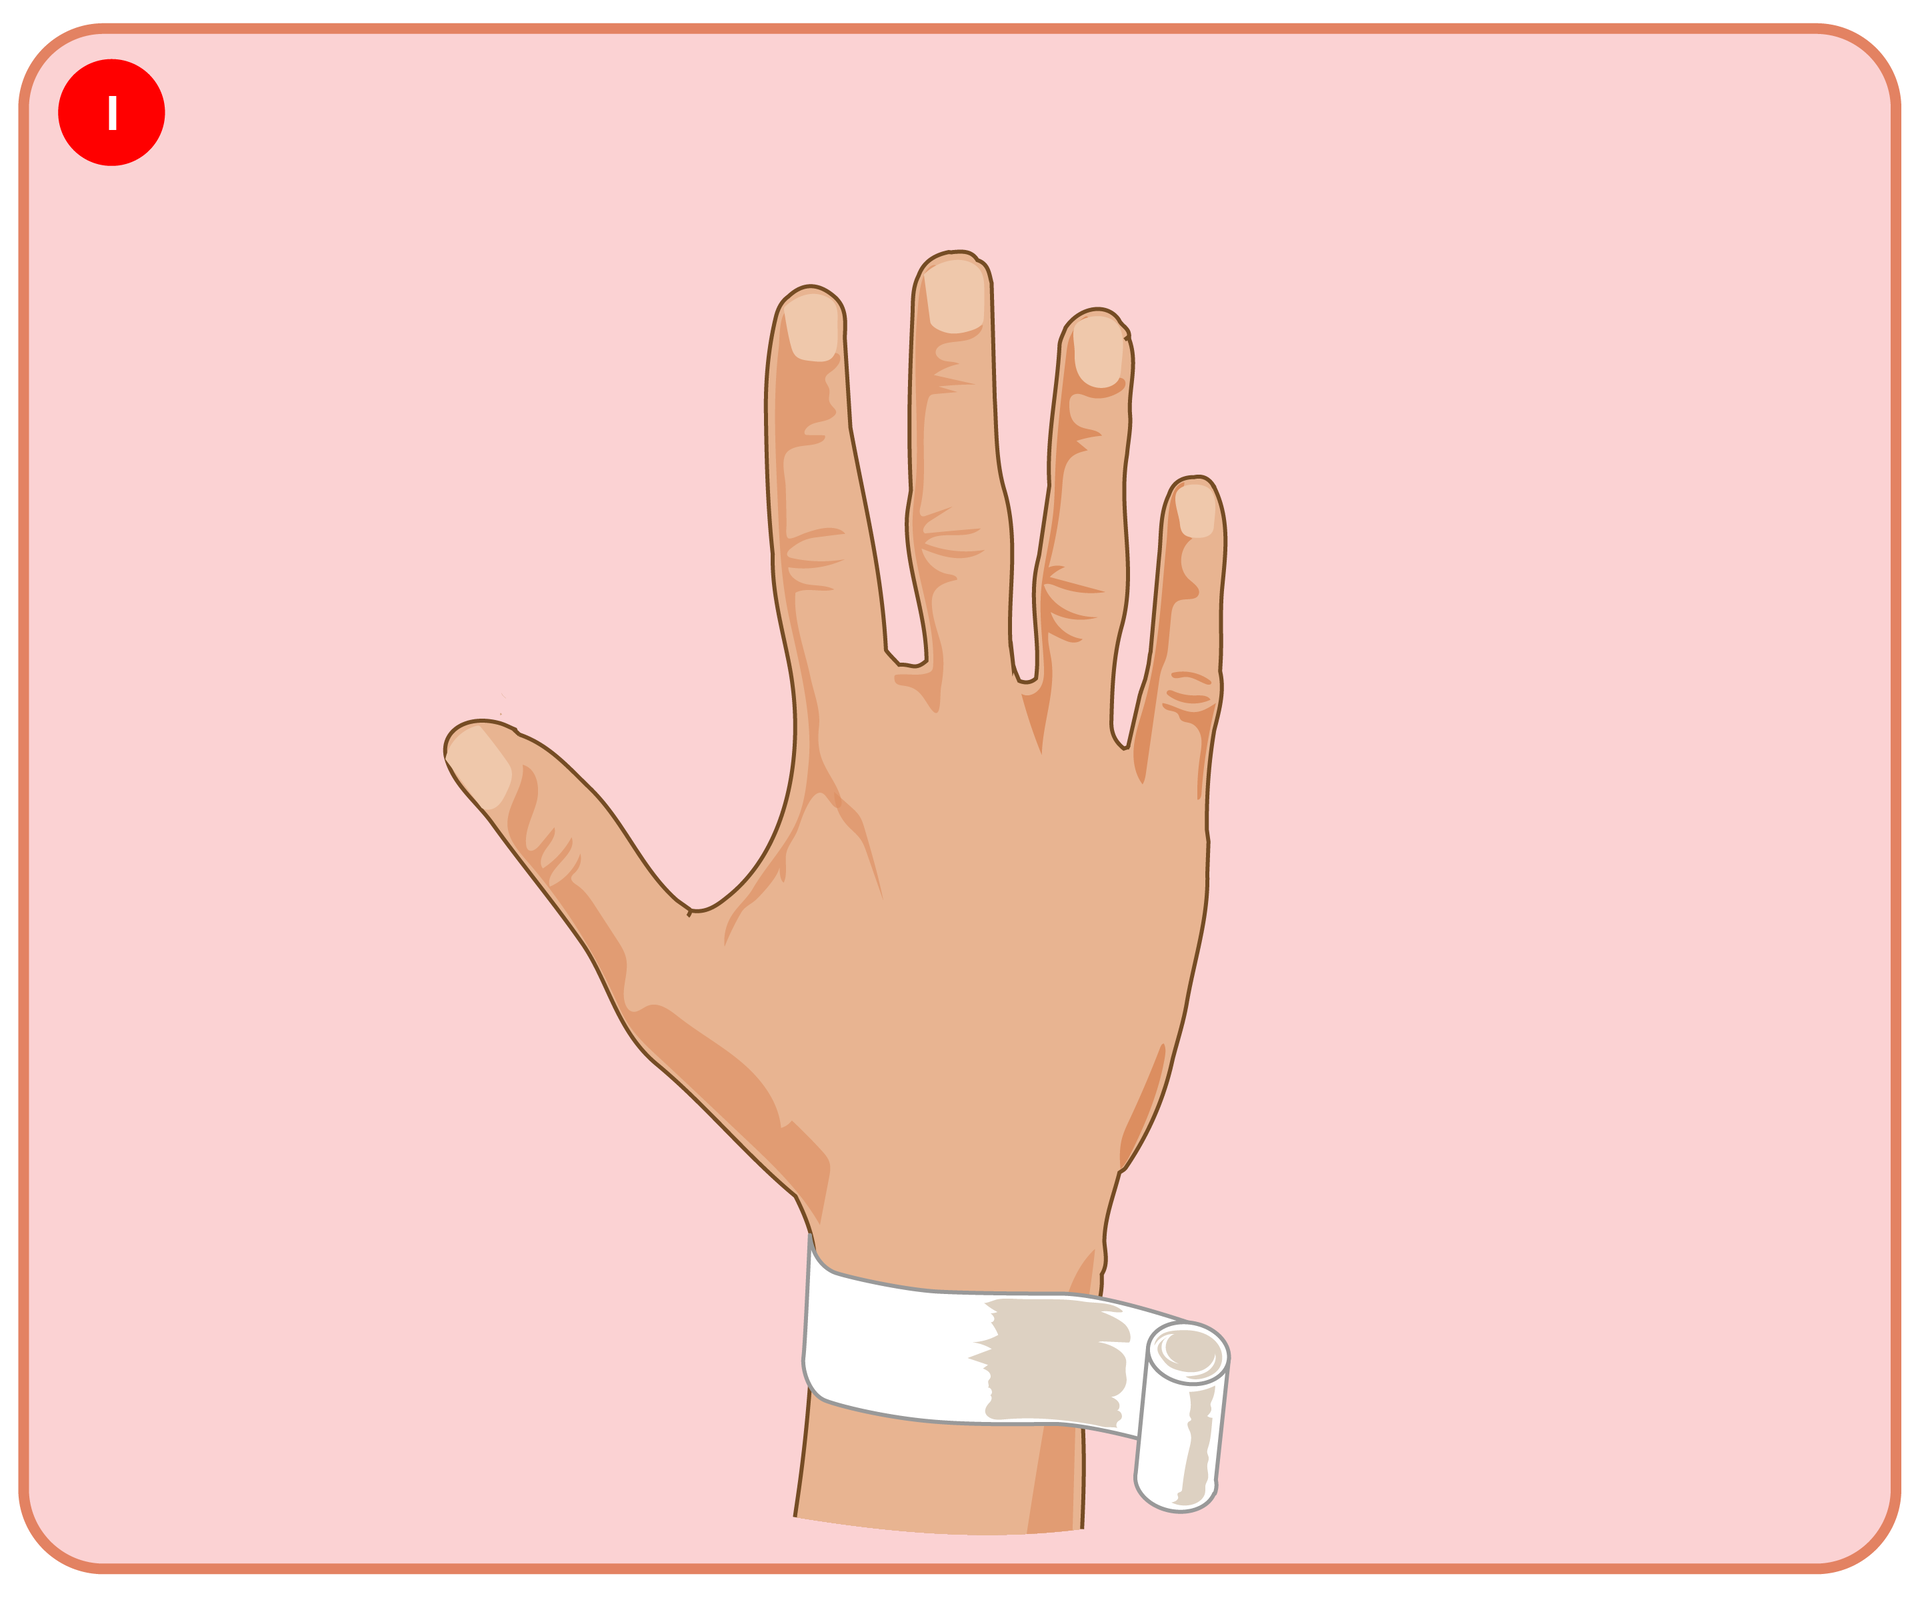 Pokaz slajdów prezentujących kolejne etapy bandażowania kciuka opatrunkiem kłosowym.